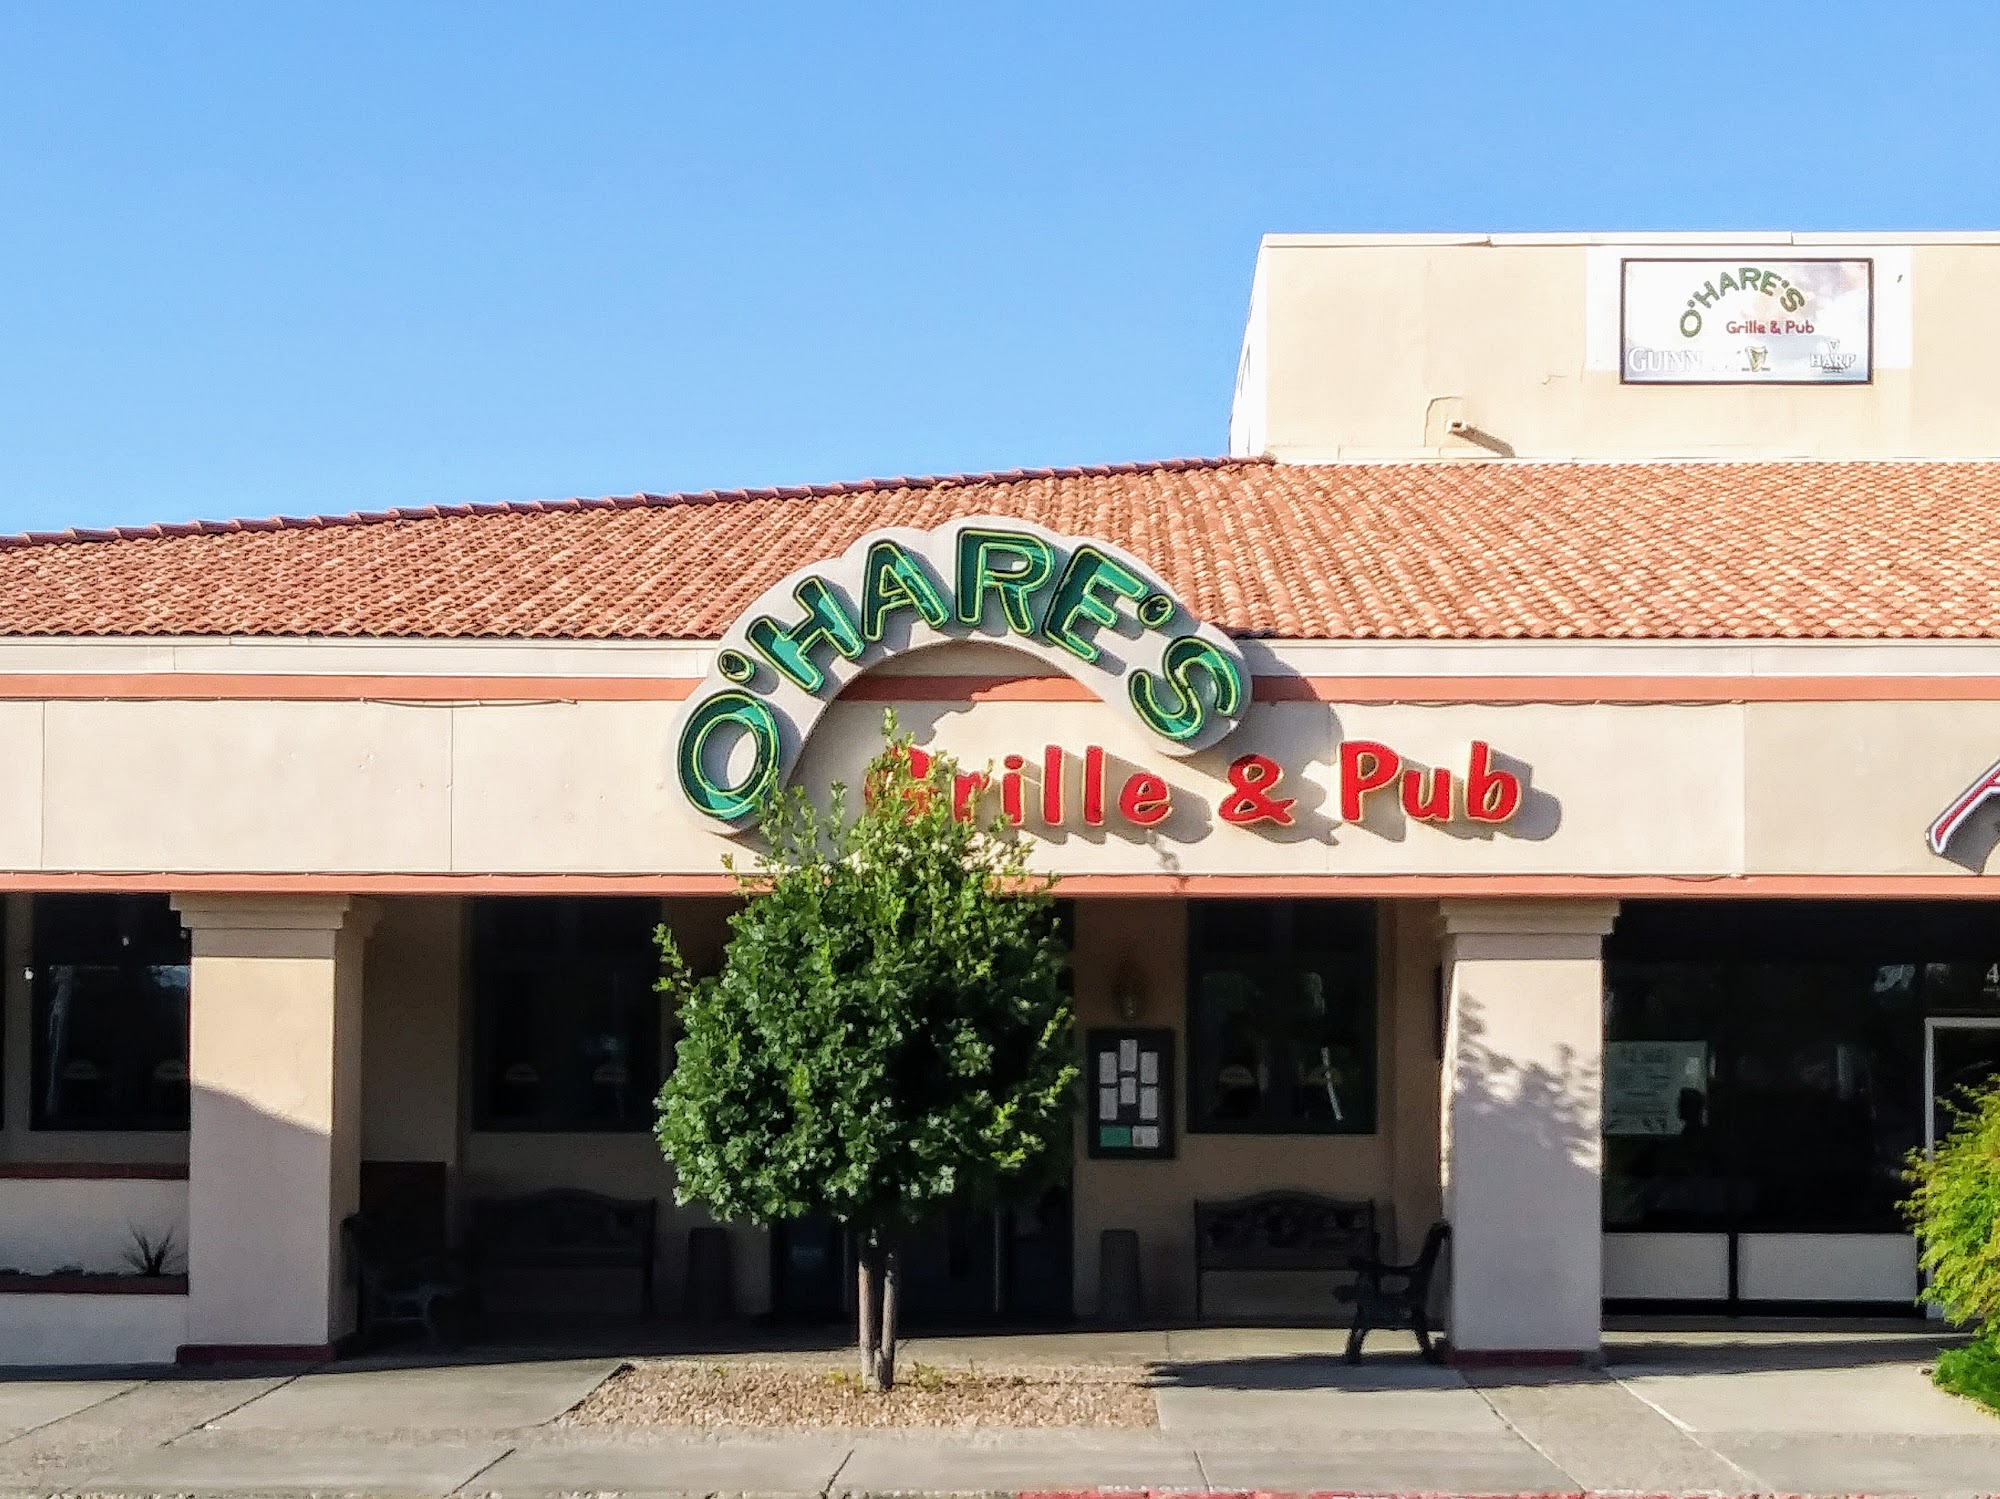 O'Hare's Grille & Pub